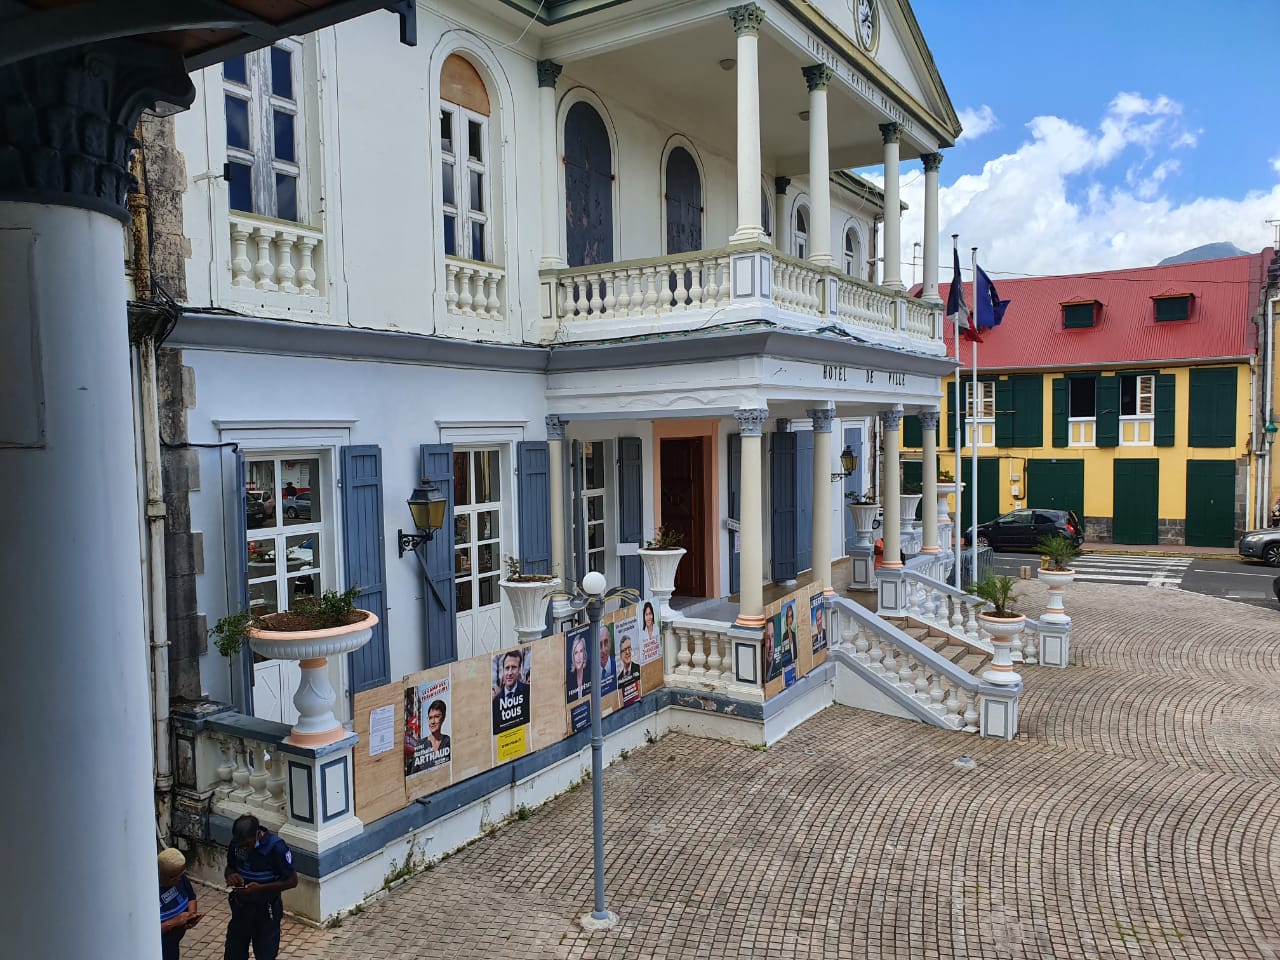     Premier tour de la présidentielle : 17,3% de votants à la mi-journée en Guadeloupe

